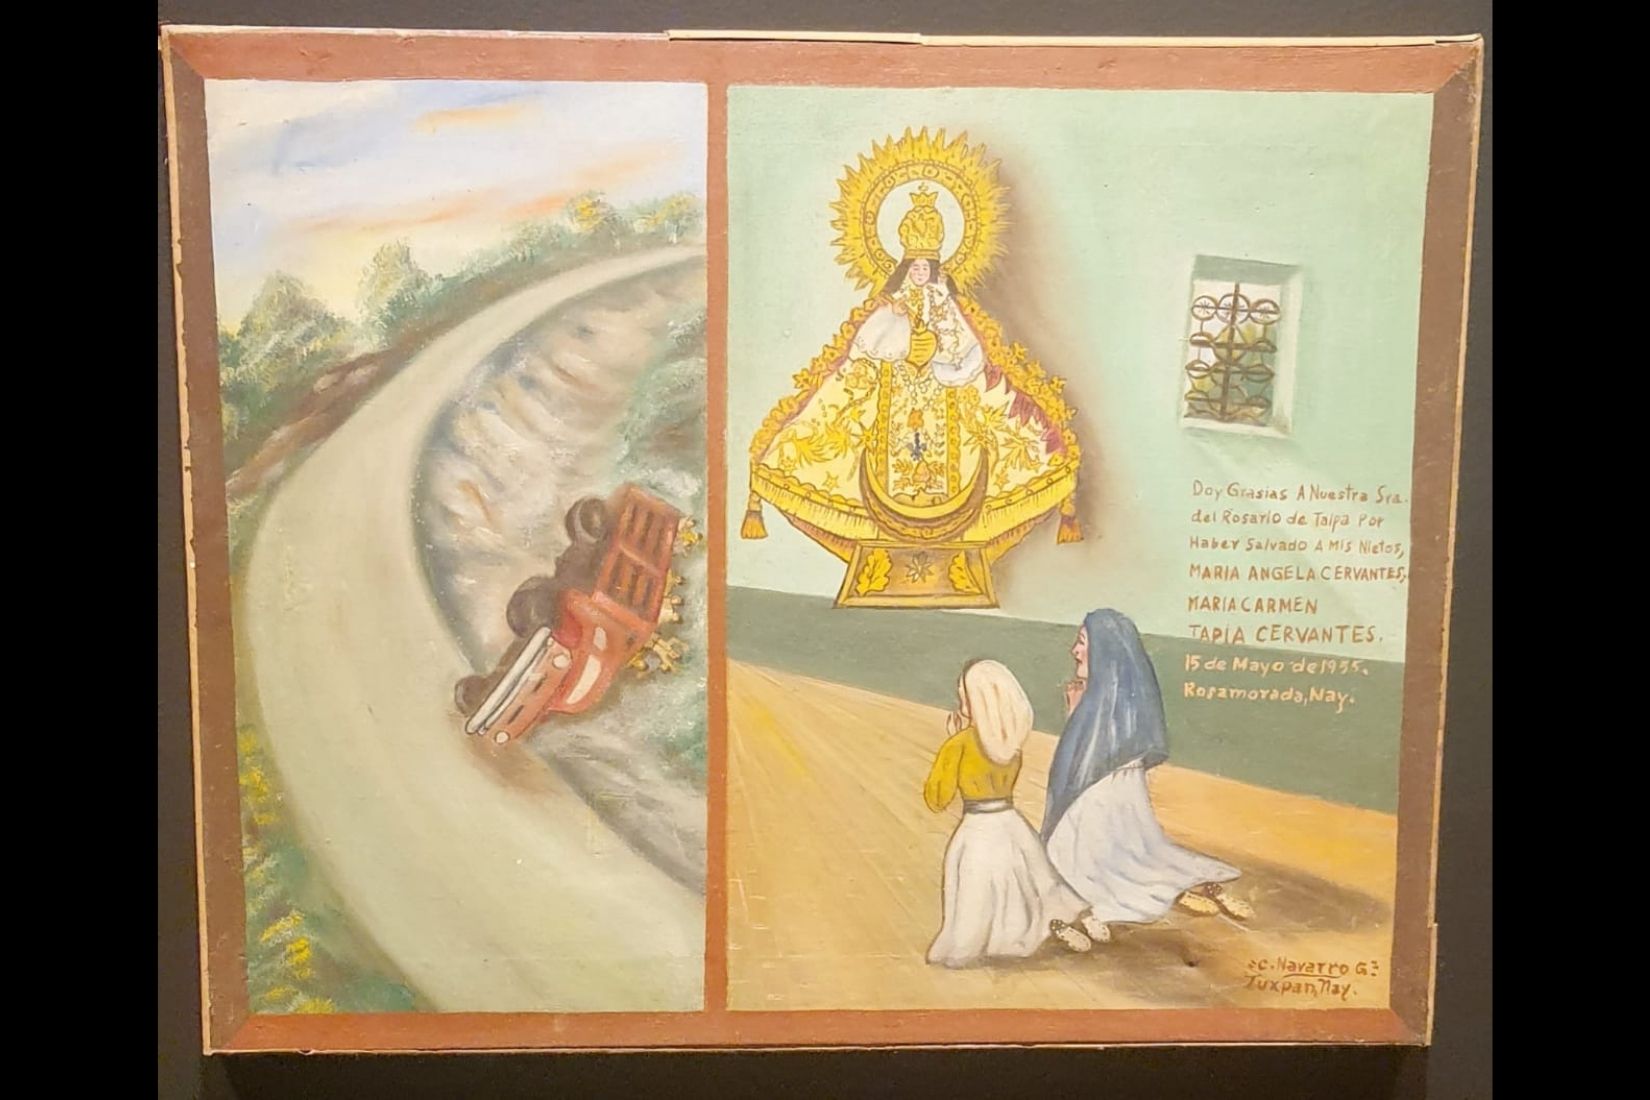 Exvoto a Nuestra Señora del Rosario de Talpa. Ofrecido por María Angeles Cervantes. Rosamaría, Nay. 1955.